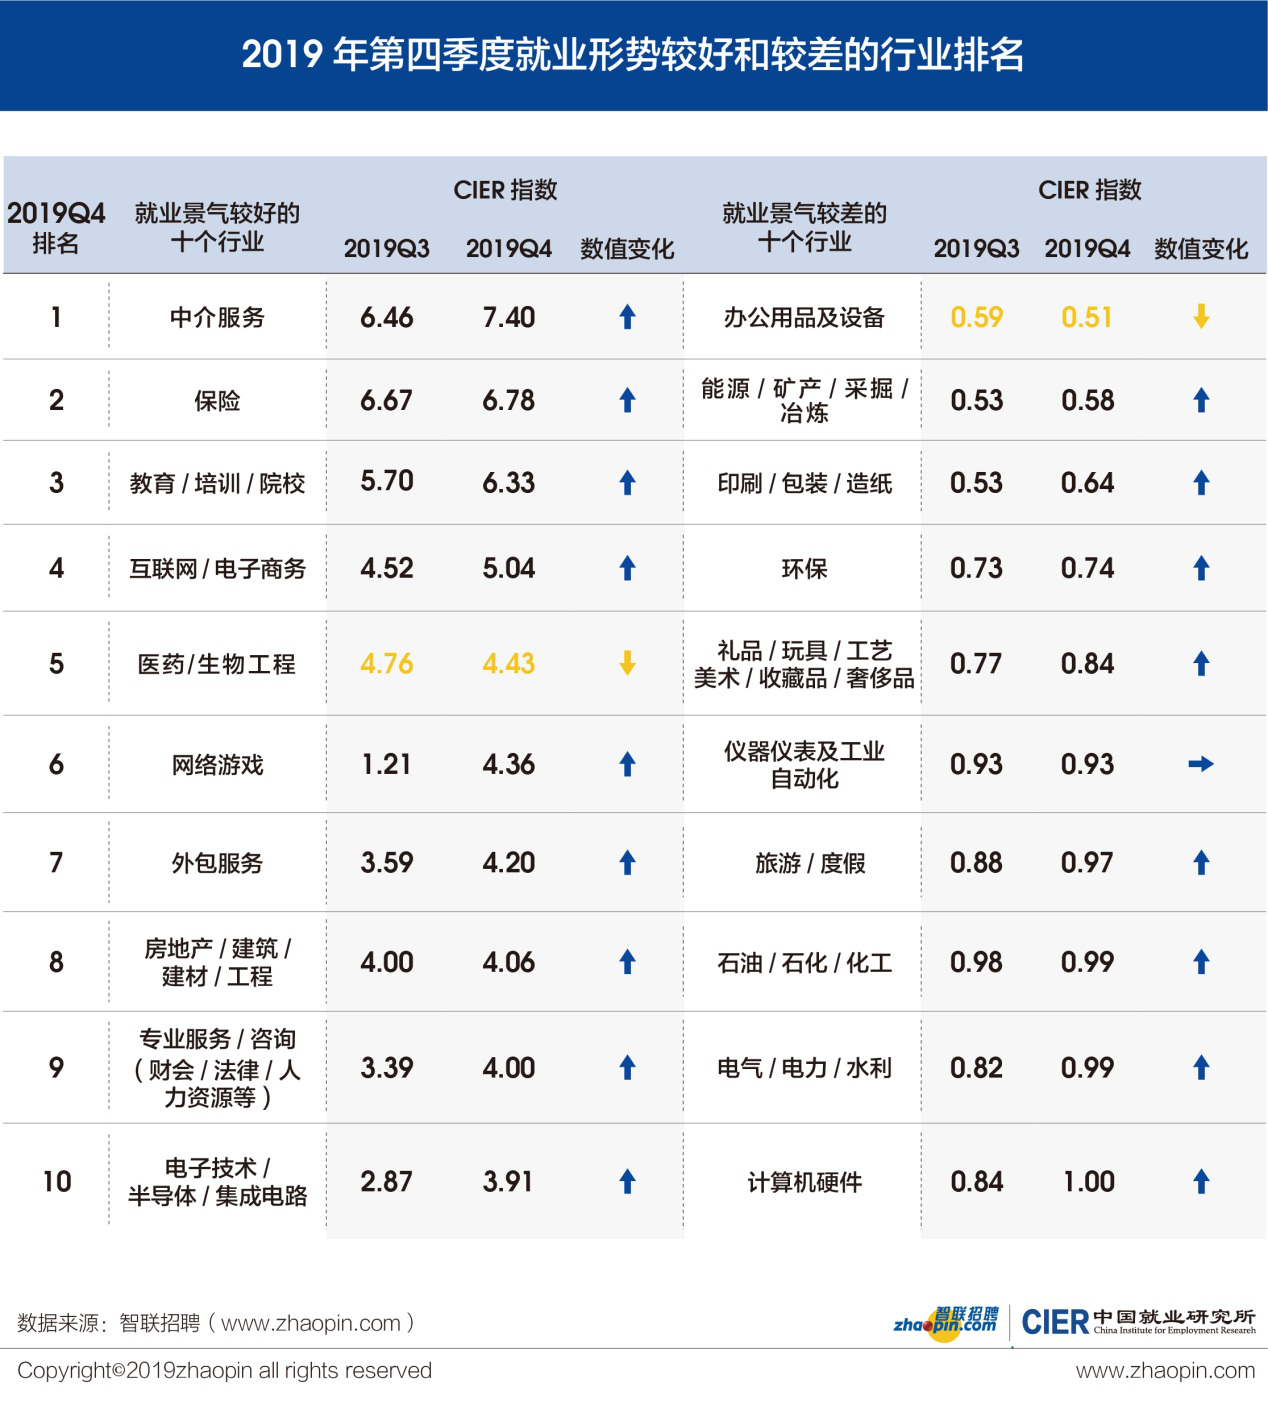 智联招聘发布2019年第四季度《中国就业